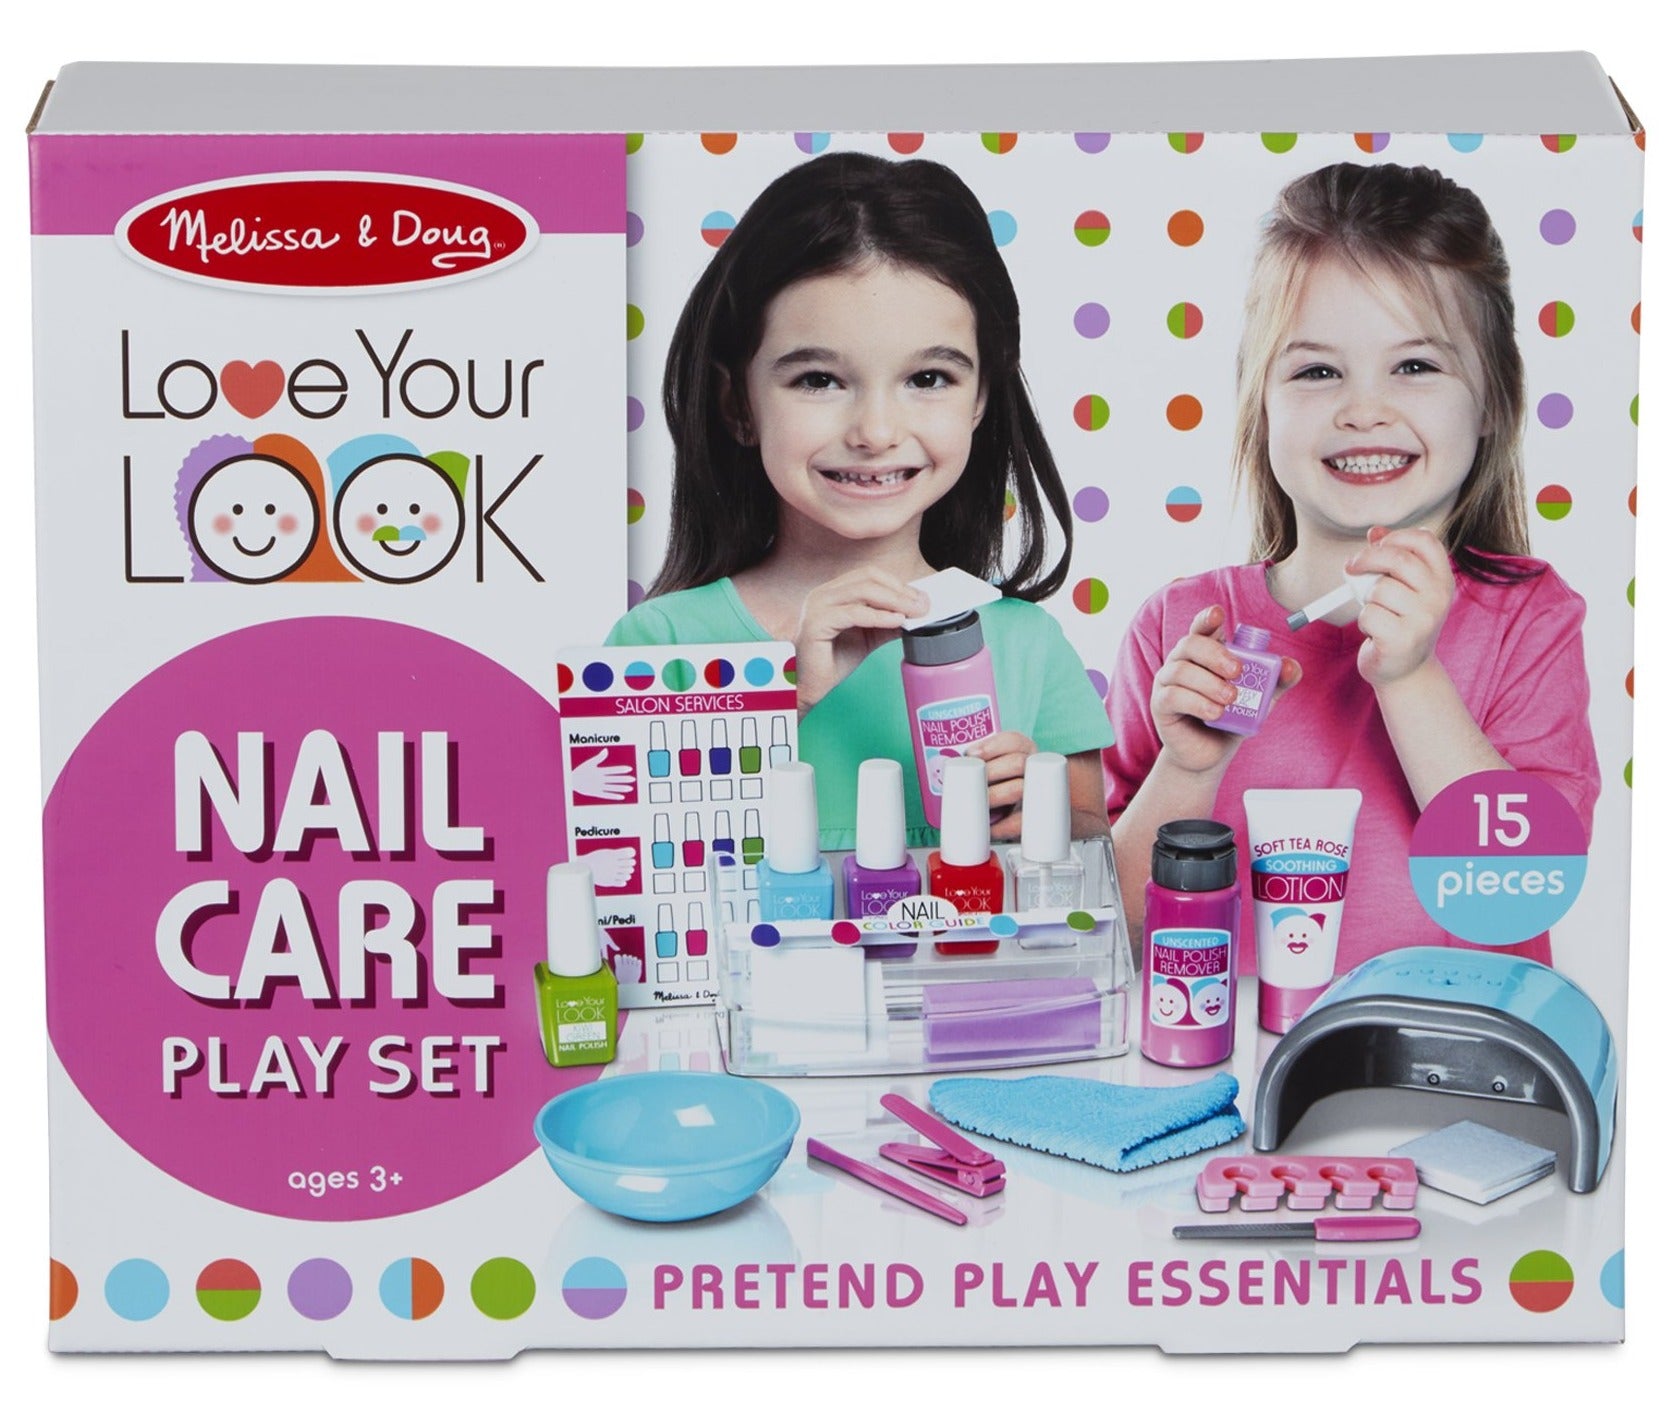 Nail Care Play Set